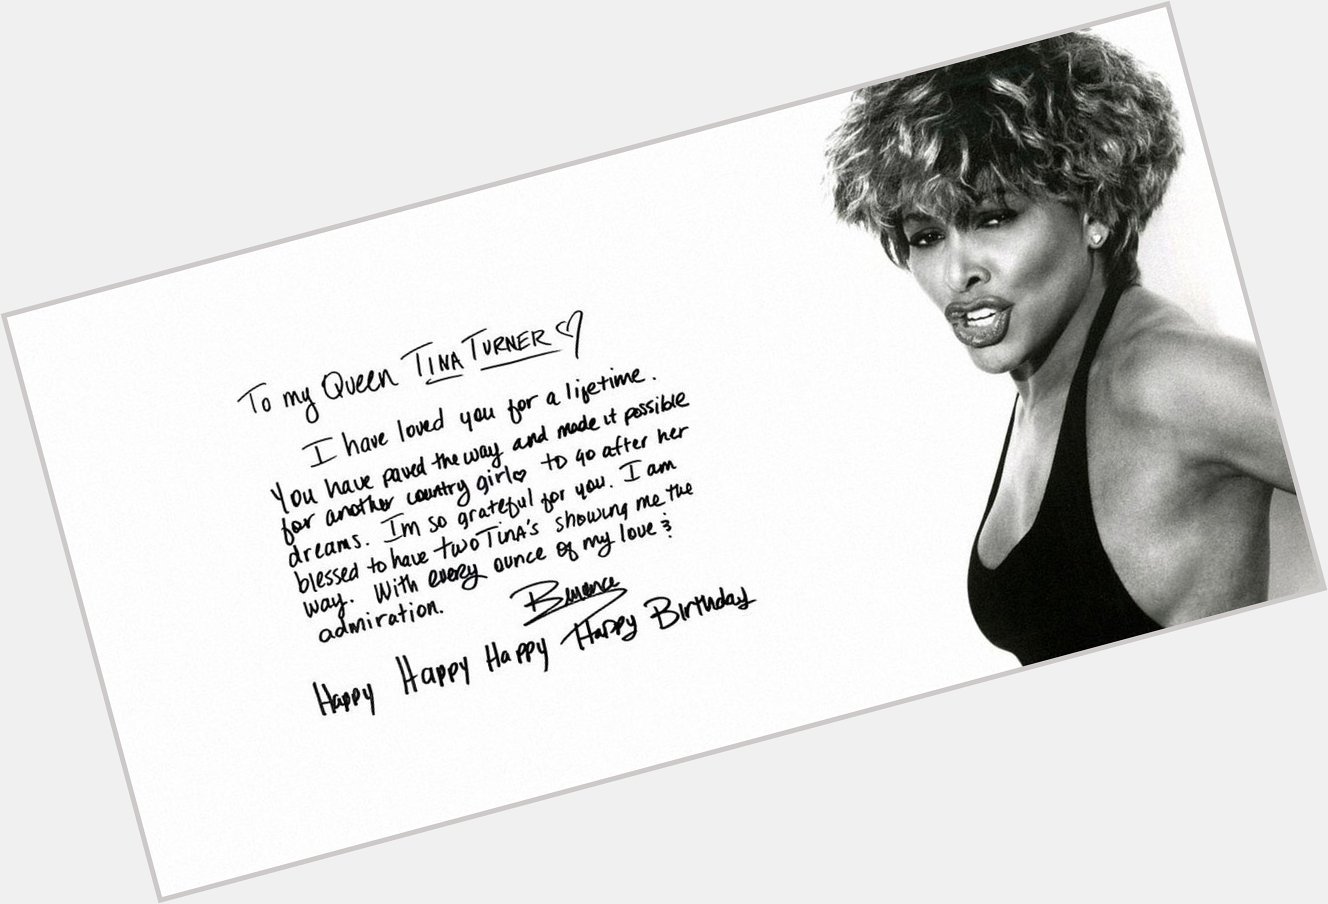 Beyoncé wishing Tina Turner a happy birthday  